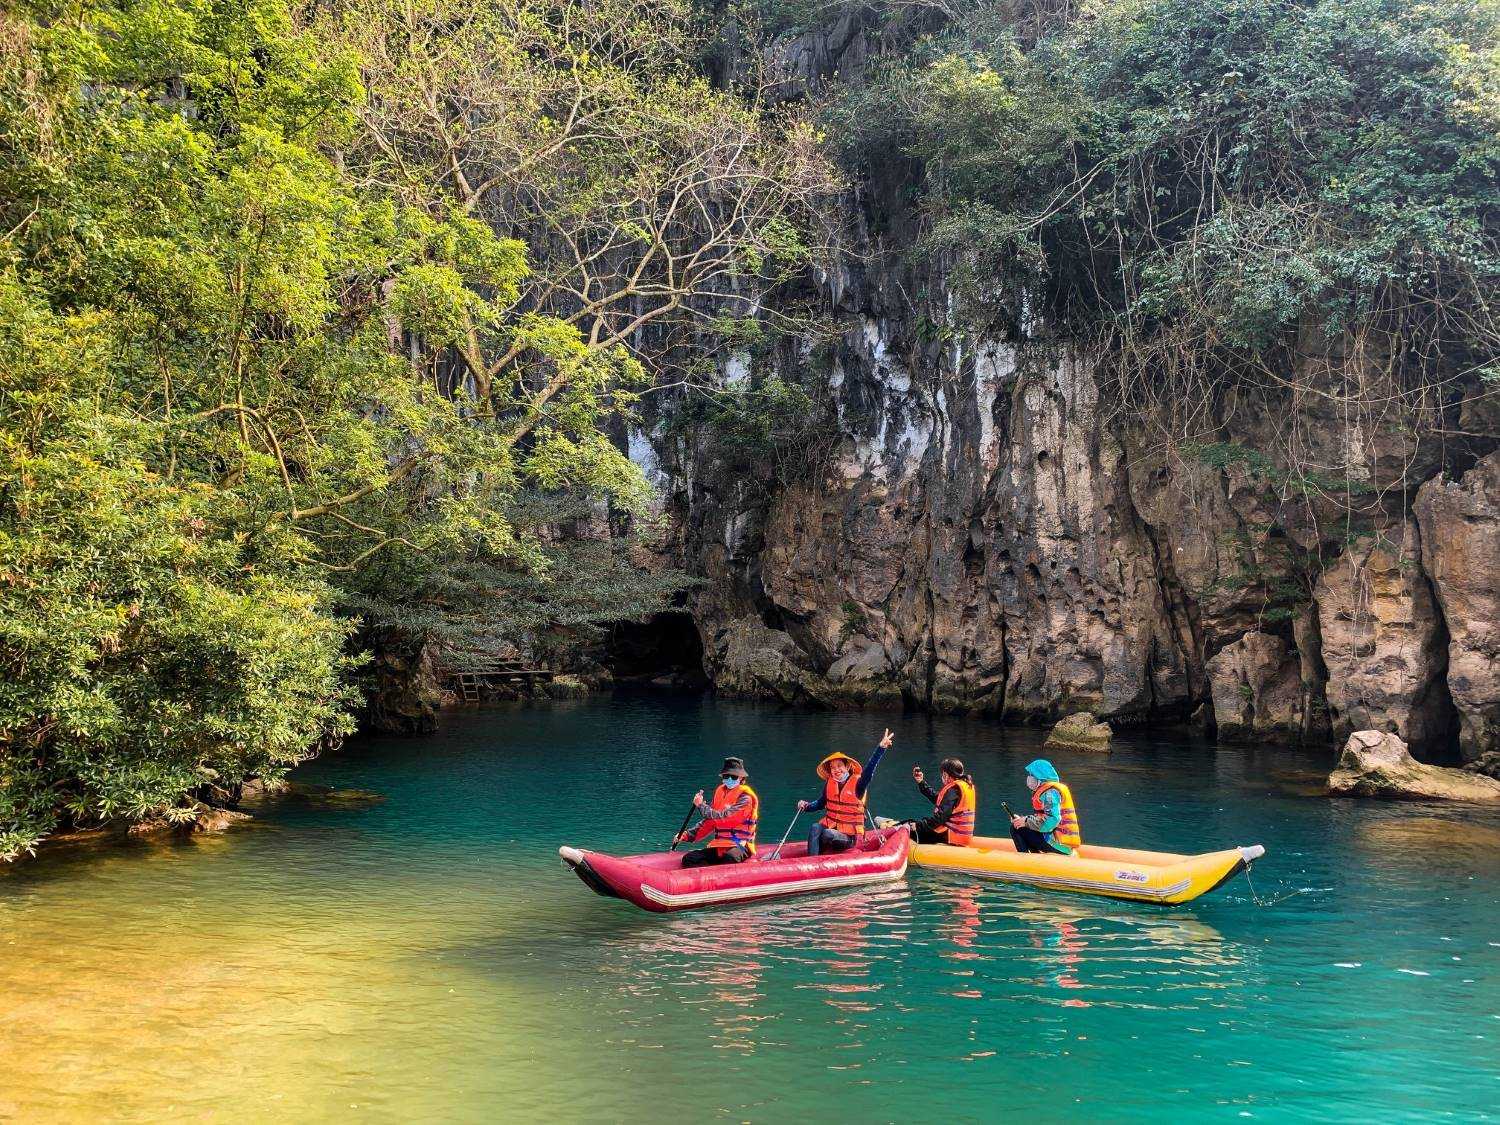 Chèo thuyền kayak trên sông Chày trong xanh và khám phá thiên nhiên.